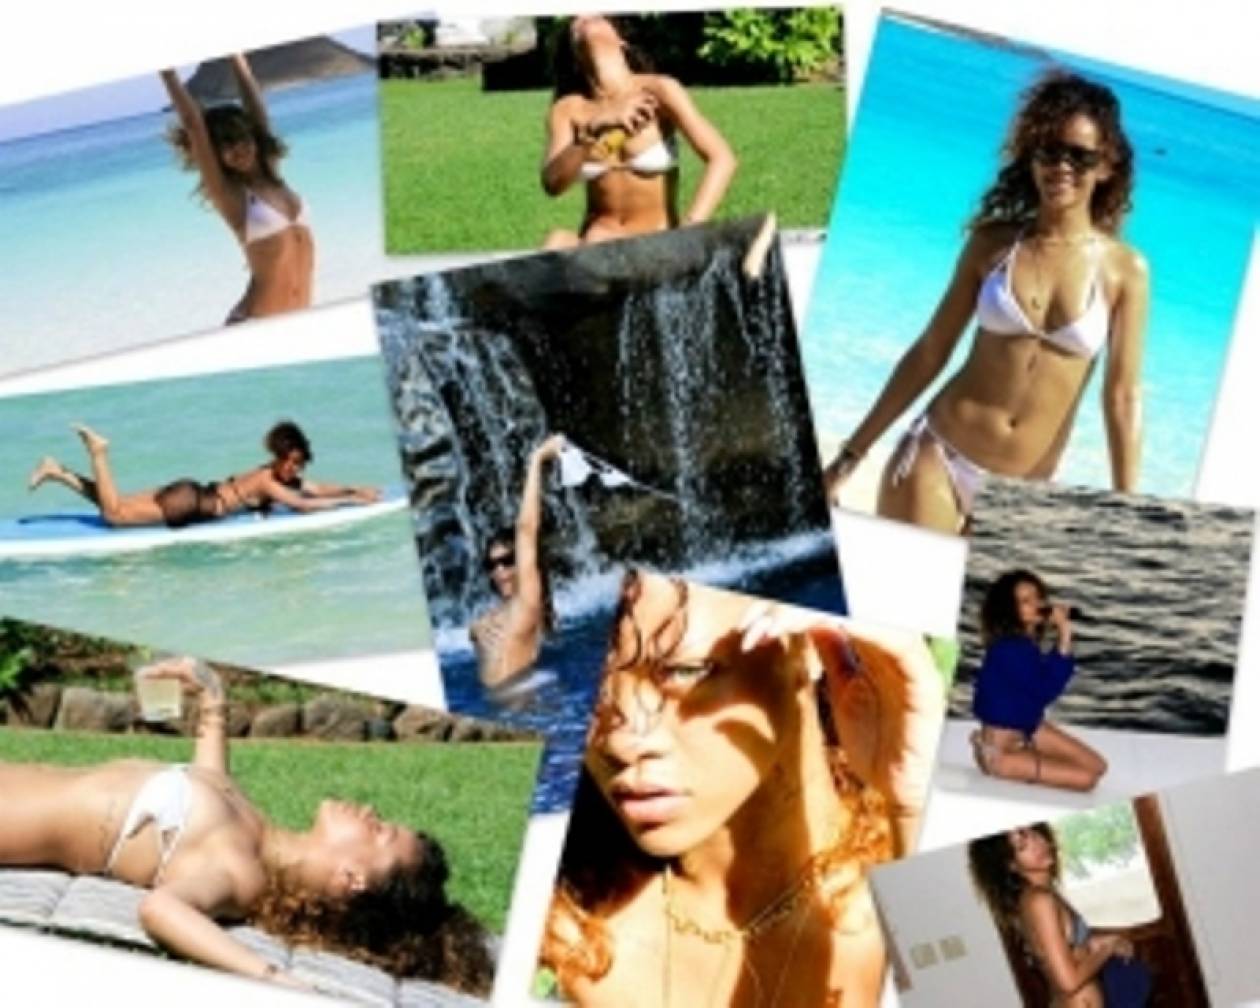 Οι 169 σέξι φωτογραφίες που ανέβασε η Rihanna στο Facebook